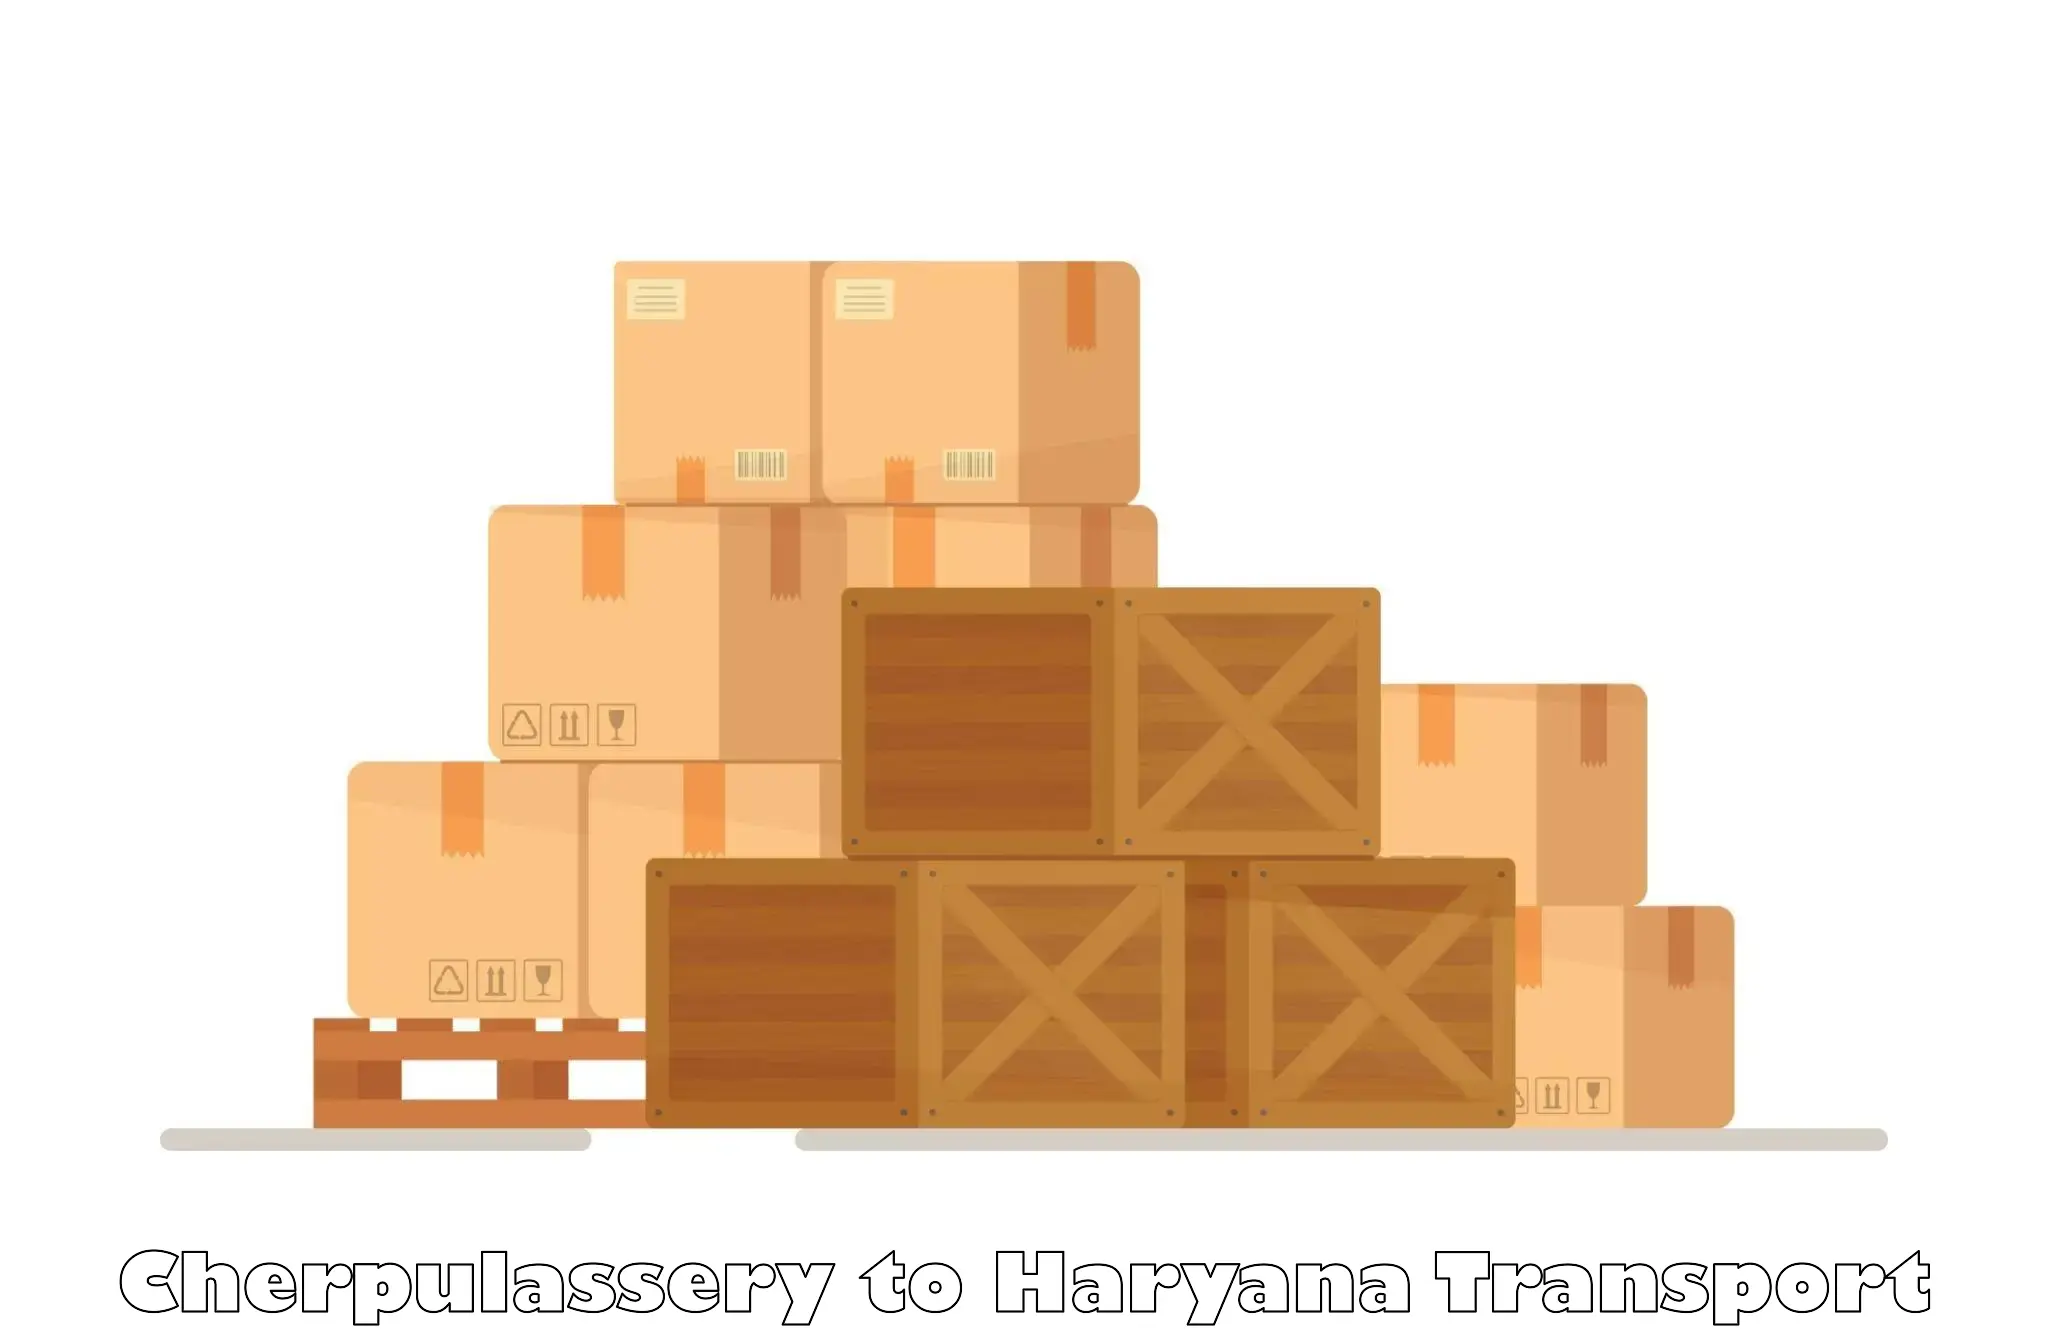 Online transport booking Cherpulassery to Haryana